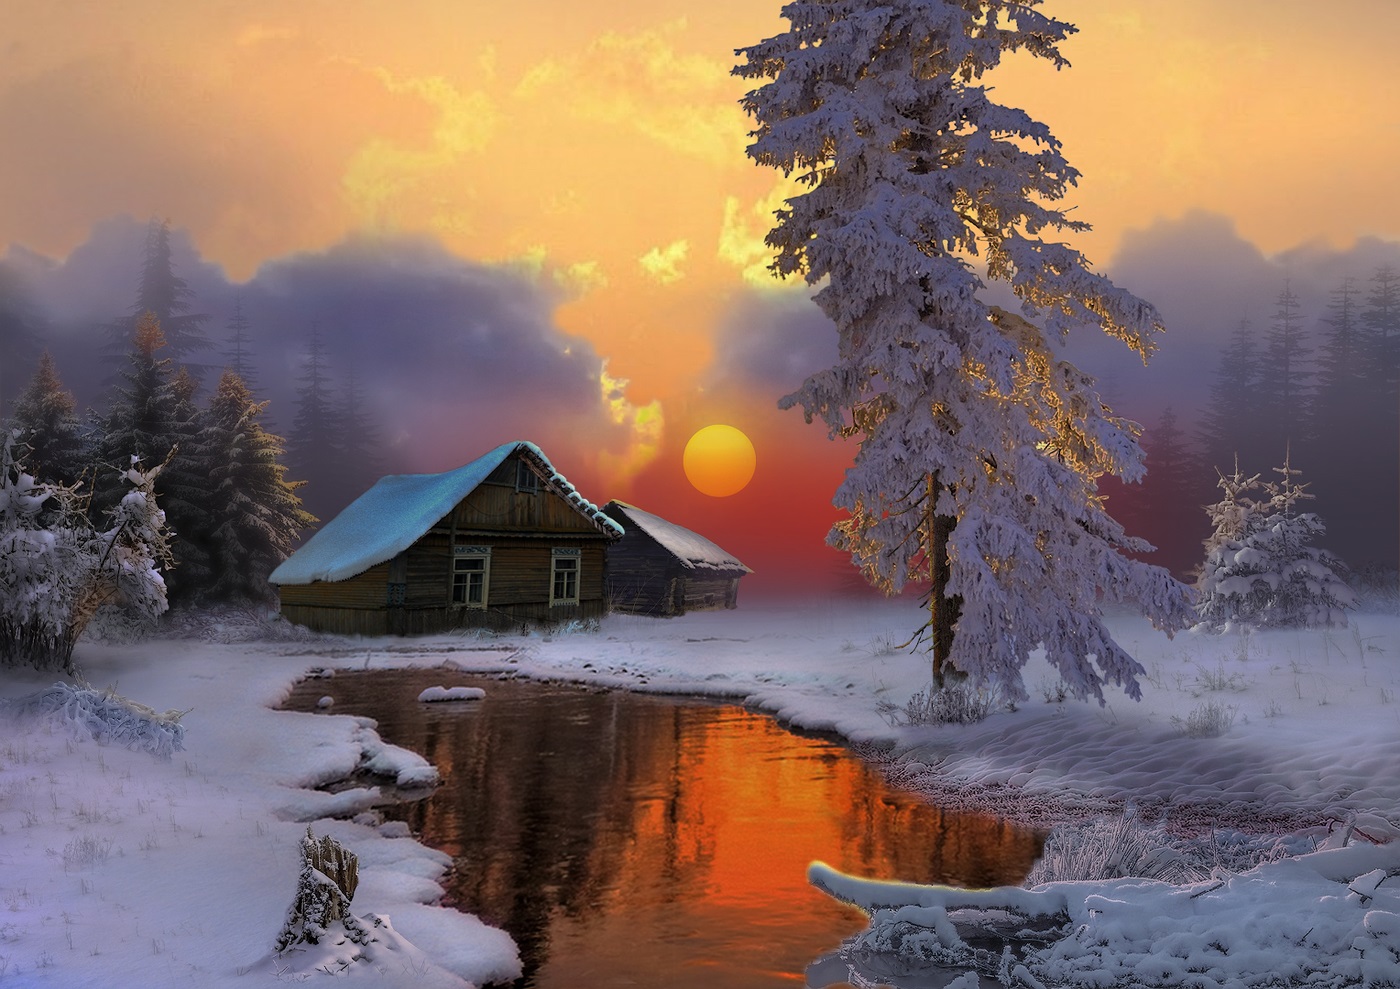 Ձմռանը գեղեցիկ մայրամուտի լուսանկարը